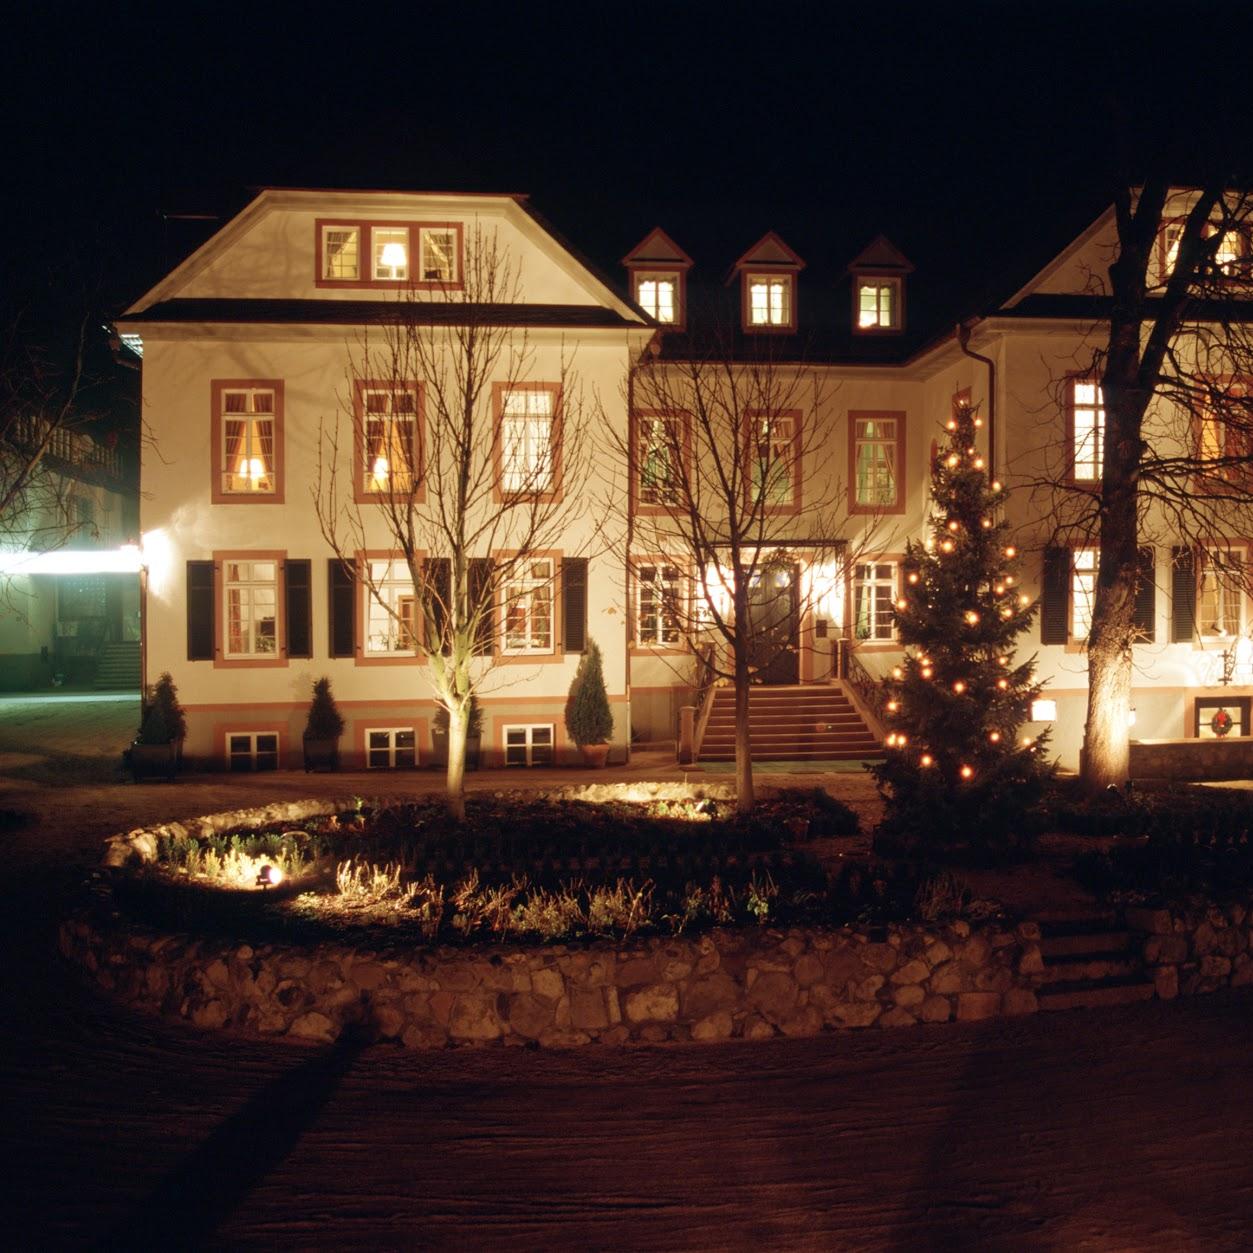 Restaurant "Hotel und Gastwirtschaft Herrenhaus von Löw" in  Nauheim